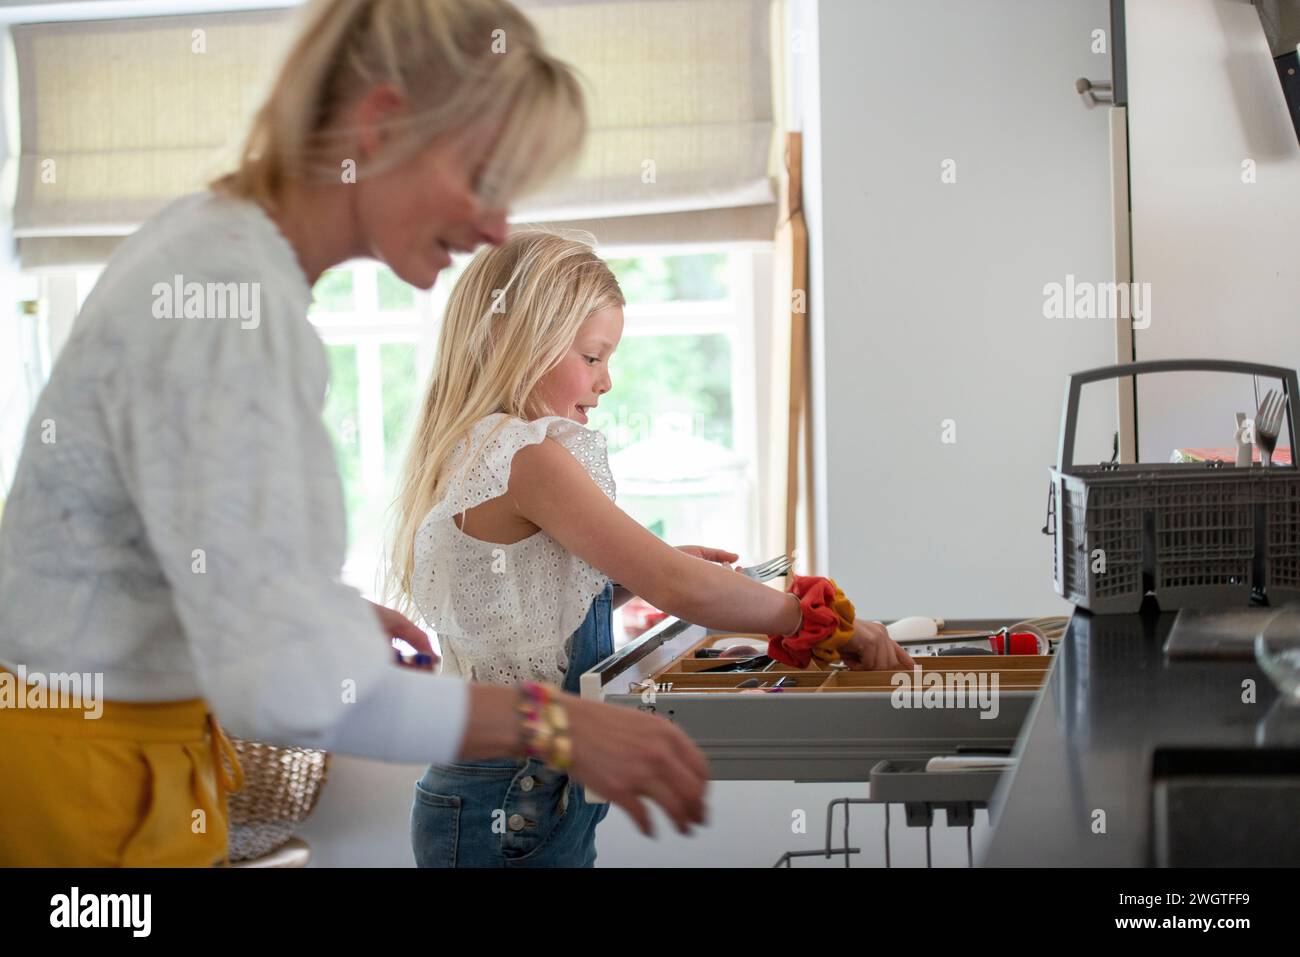 Giovane ragazza in cerca di un coltello affilato, aiutata da sua madre ad essere pulita e sicura Foto Stock